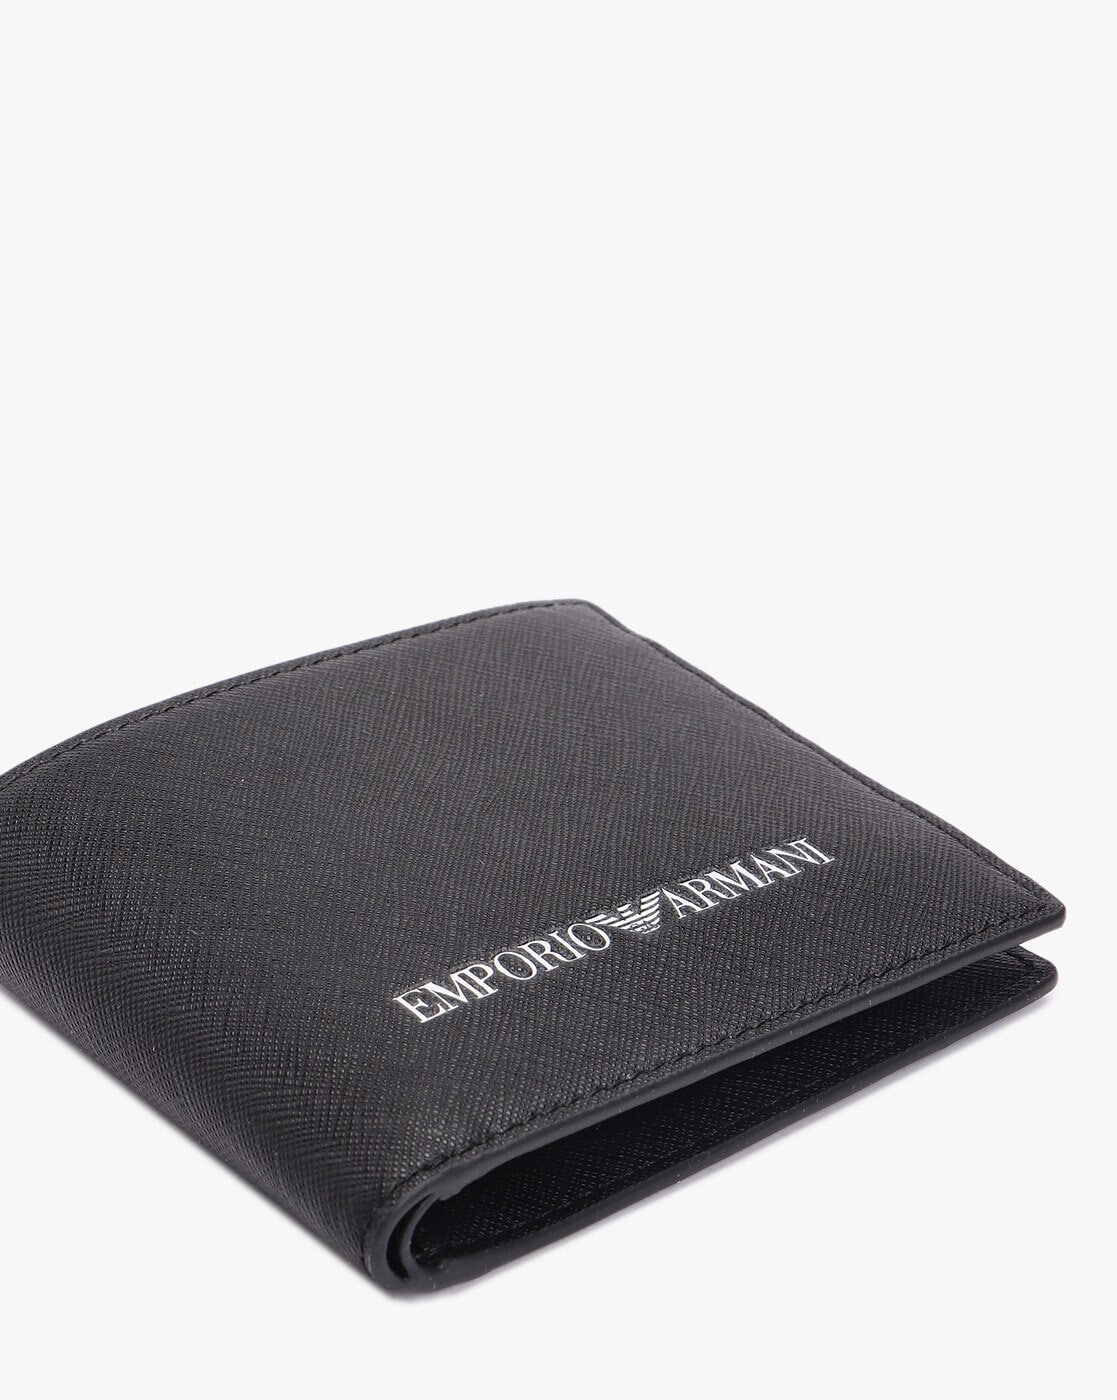 Two-toned leather wallet with wraparound zip | GIORGIO ARMANI Man